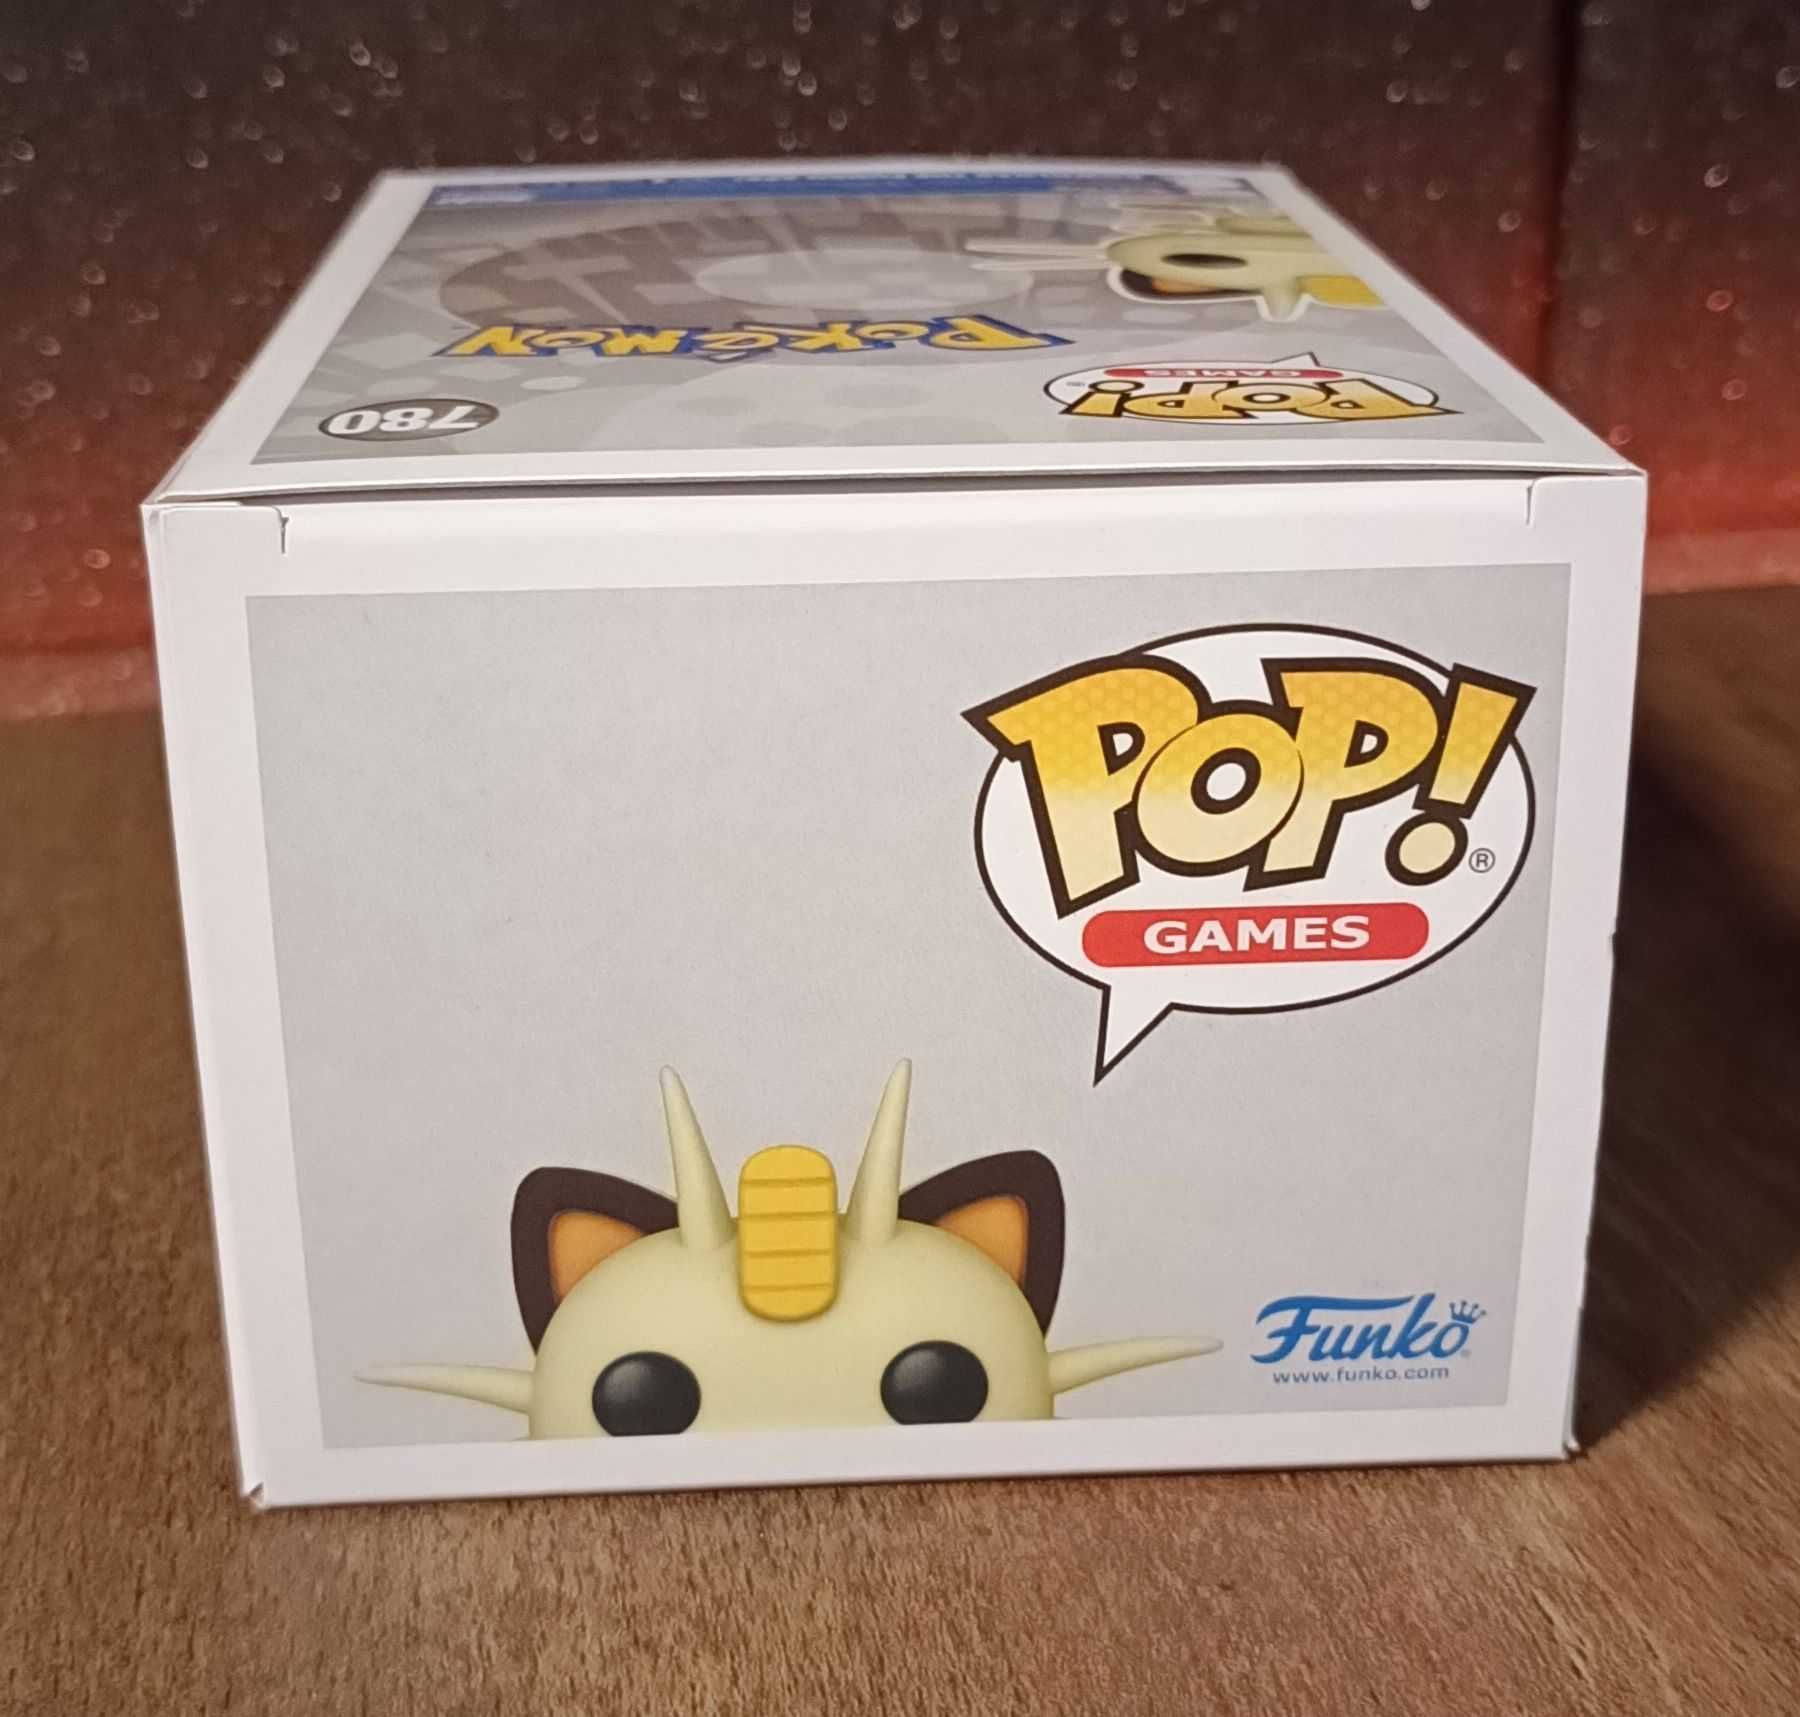 Kolekcjonerska figurka 780 - Meowth - Pokemon Funko Pop!